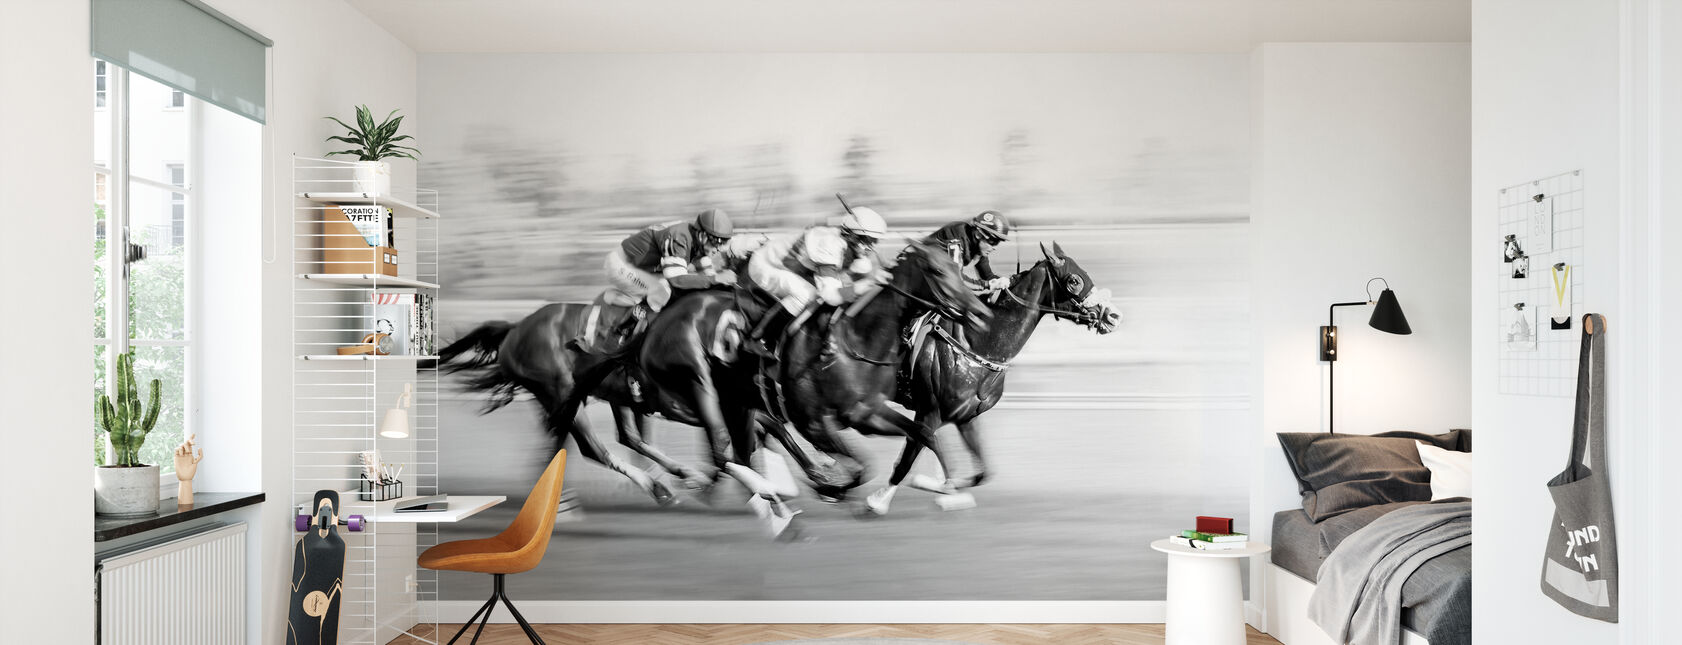 Horse Racing at Queen's Plate - Wallpaper - Kids Room